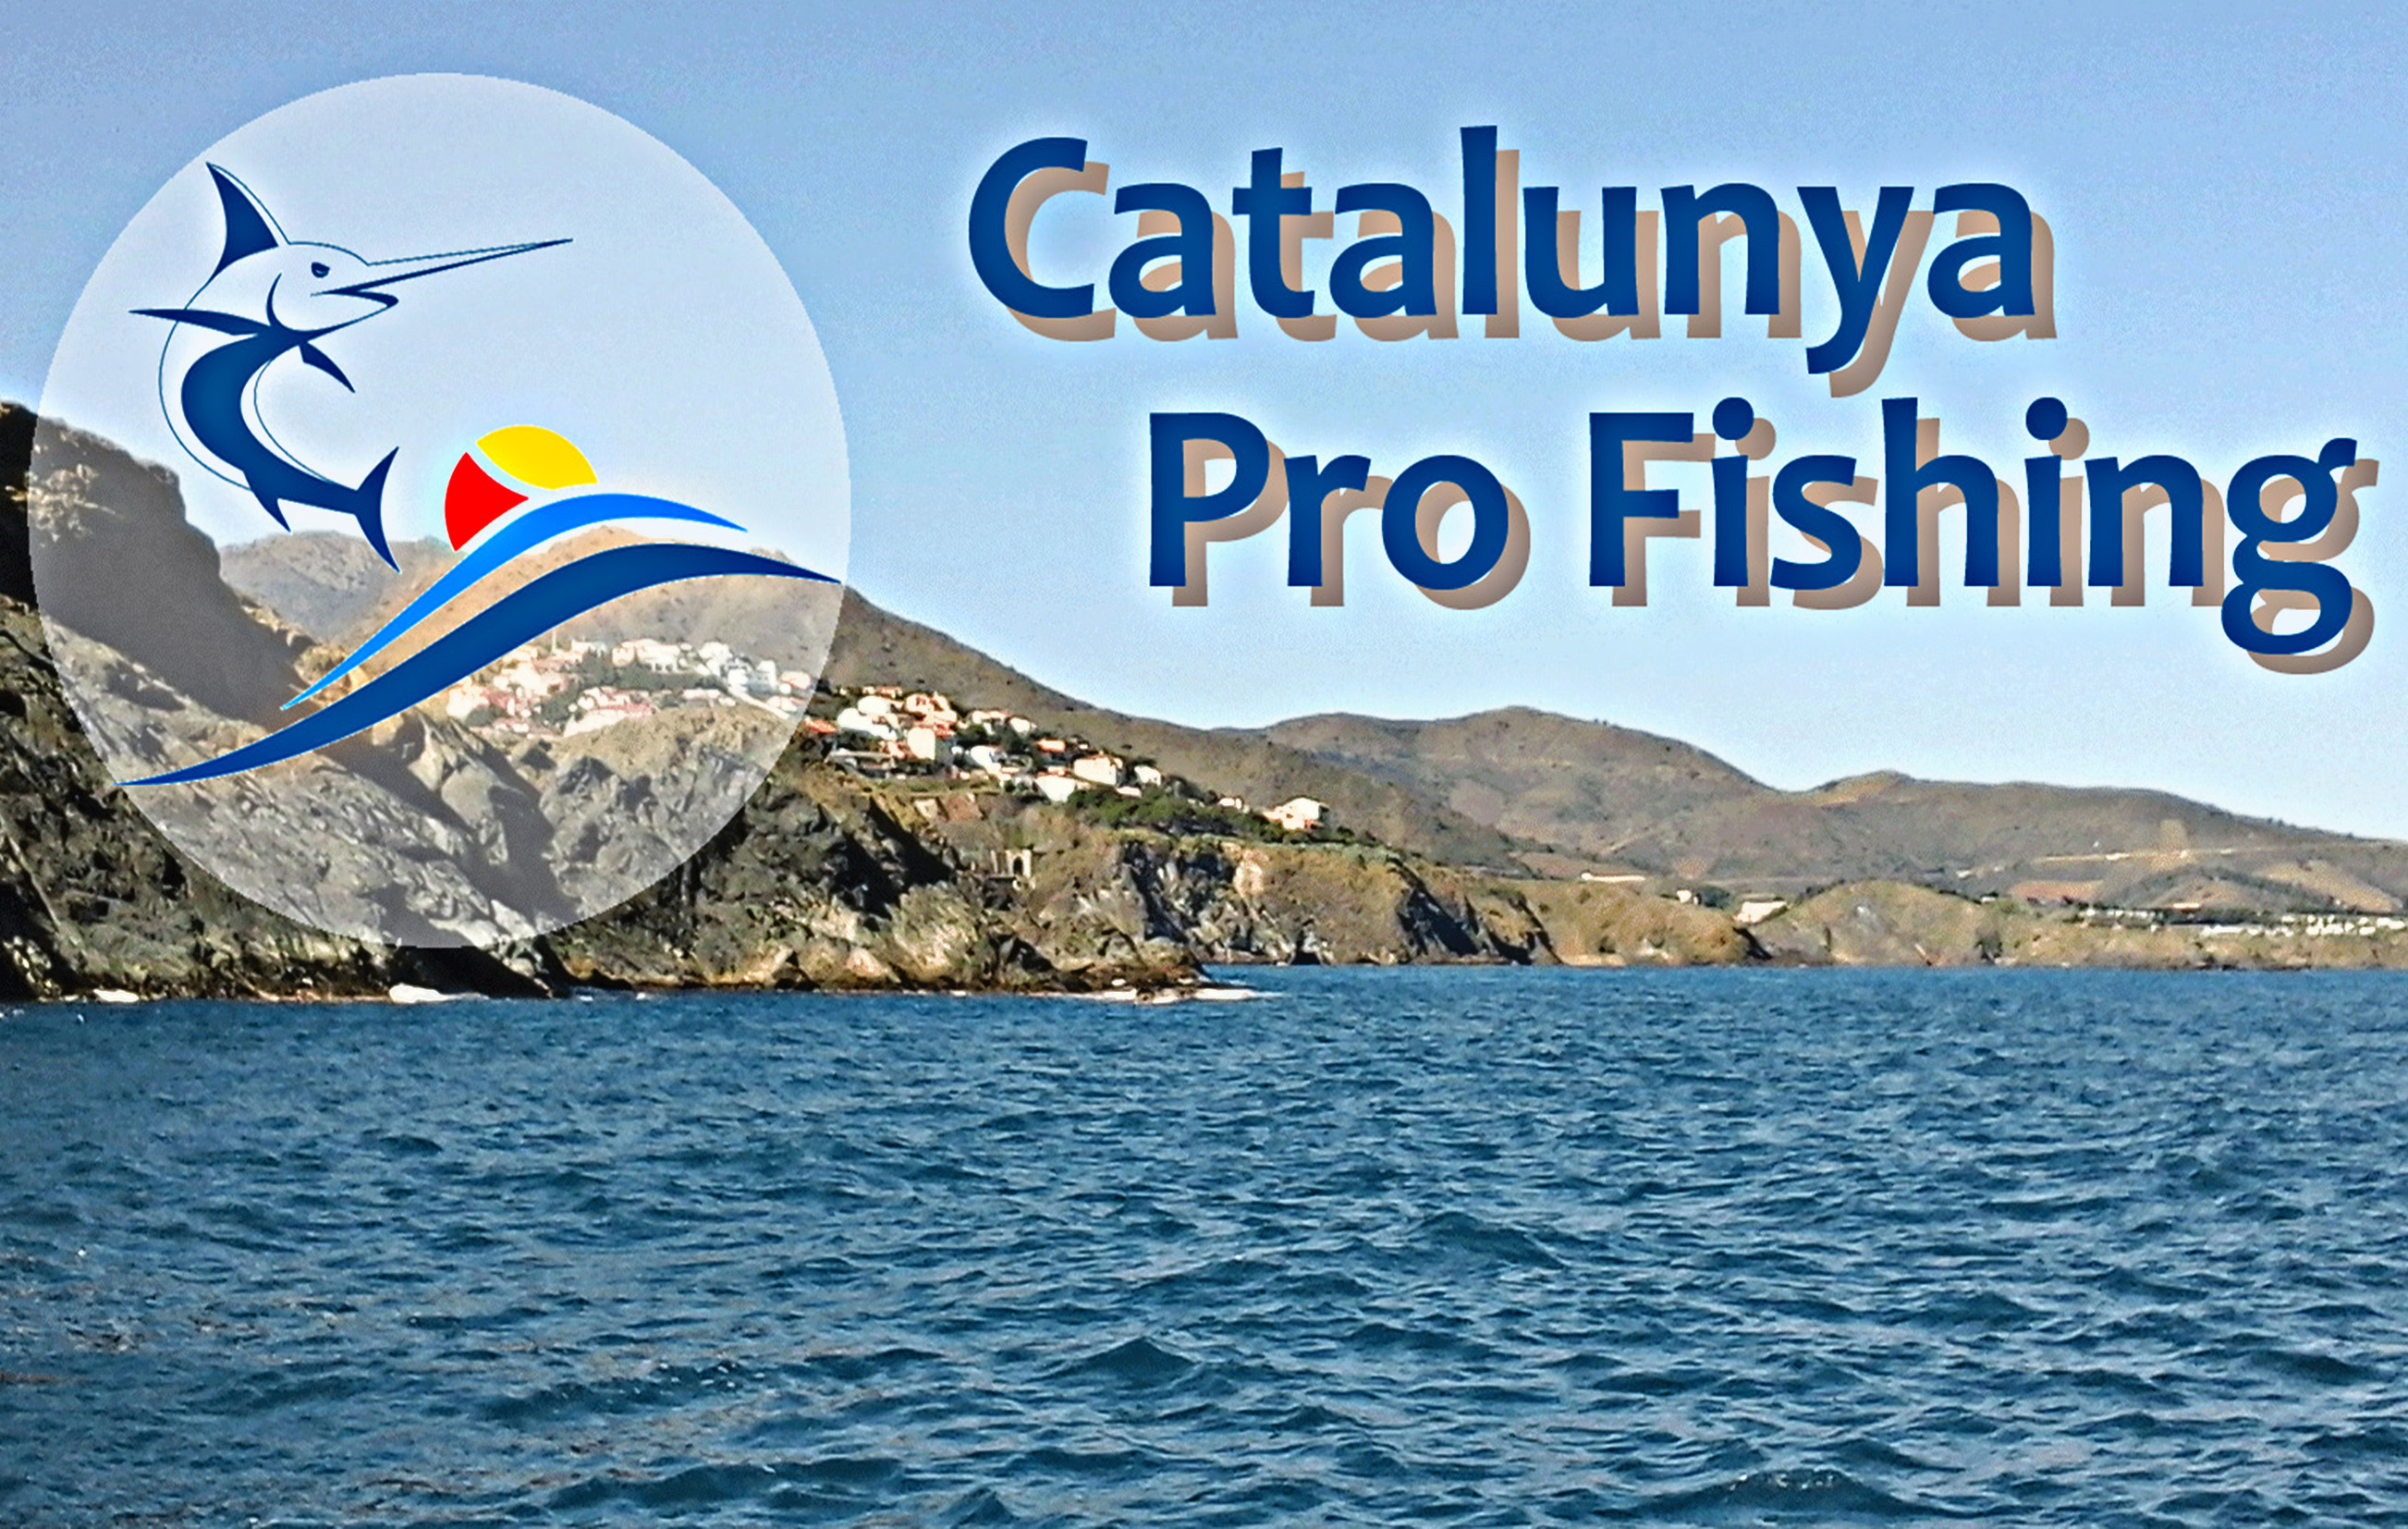 Catalunya Pro Fishing moniteur guide de pêche professionnel en méditerranée